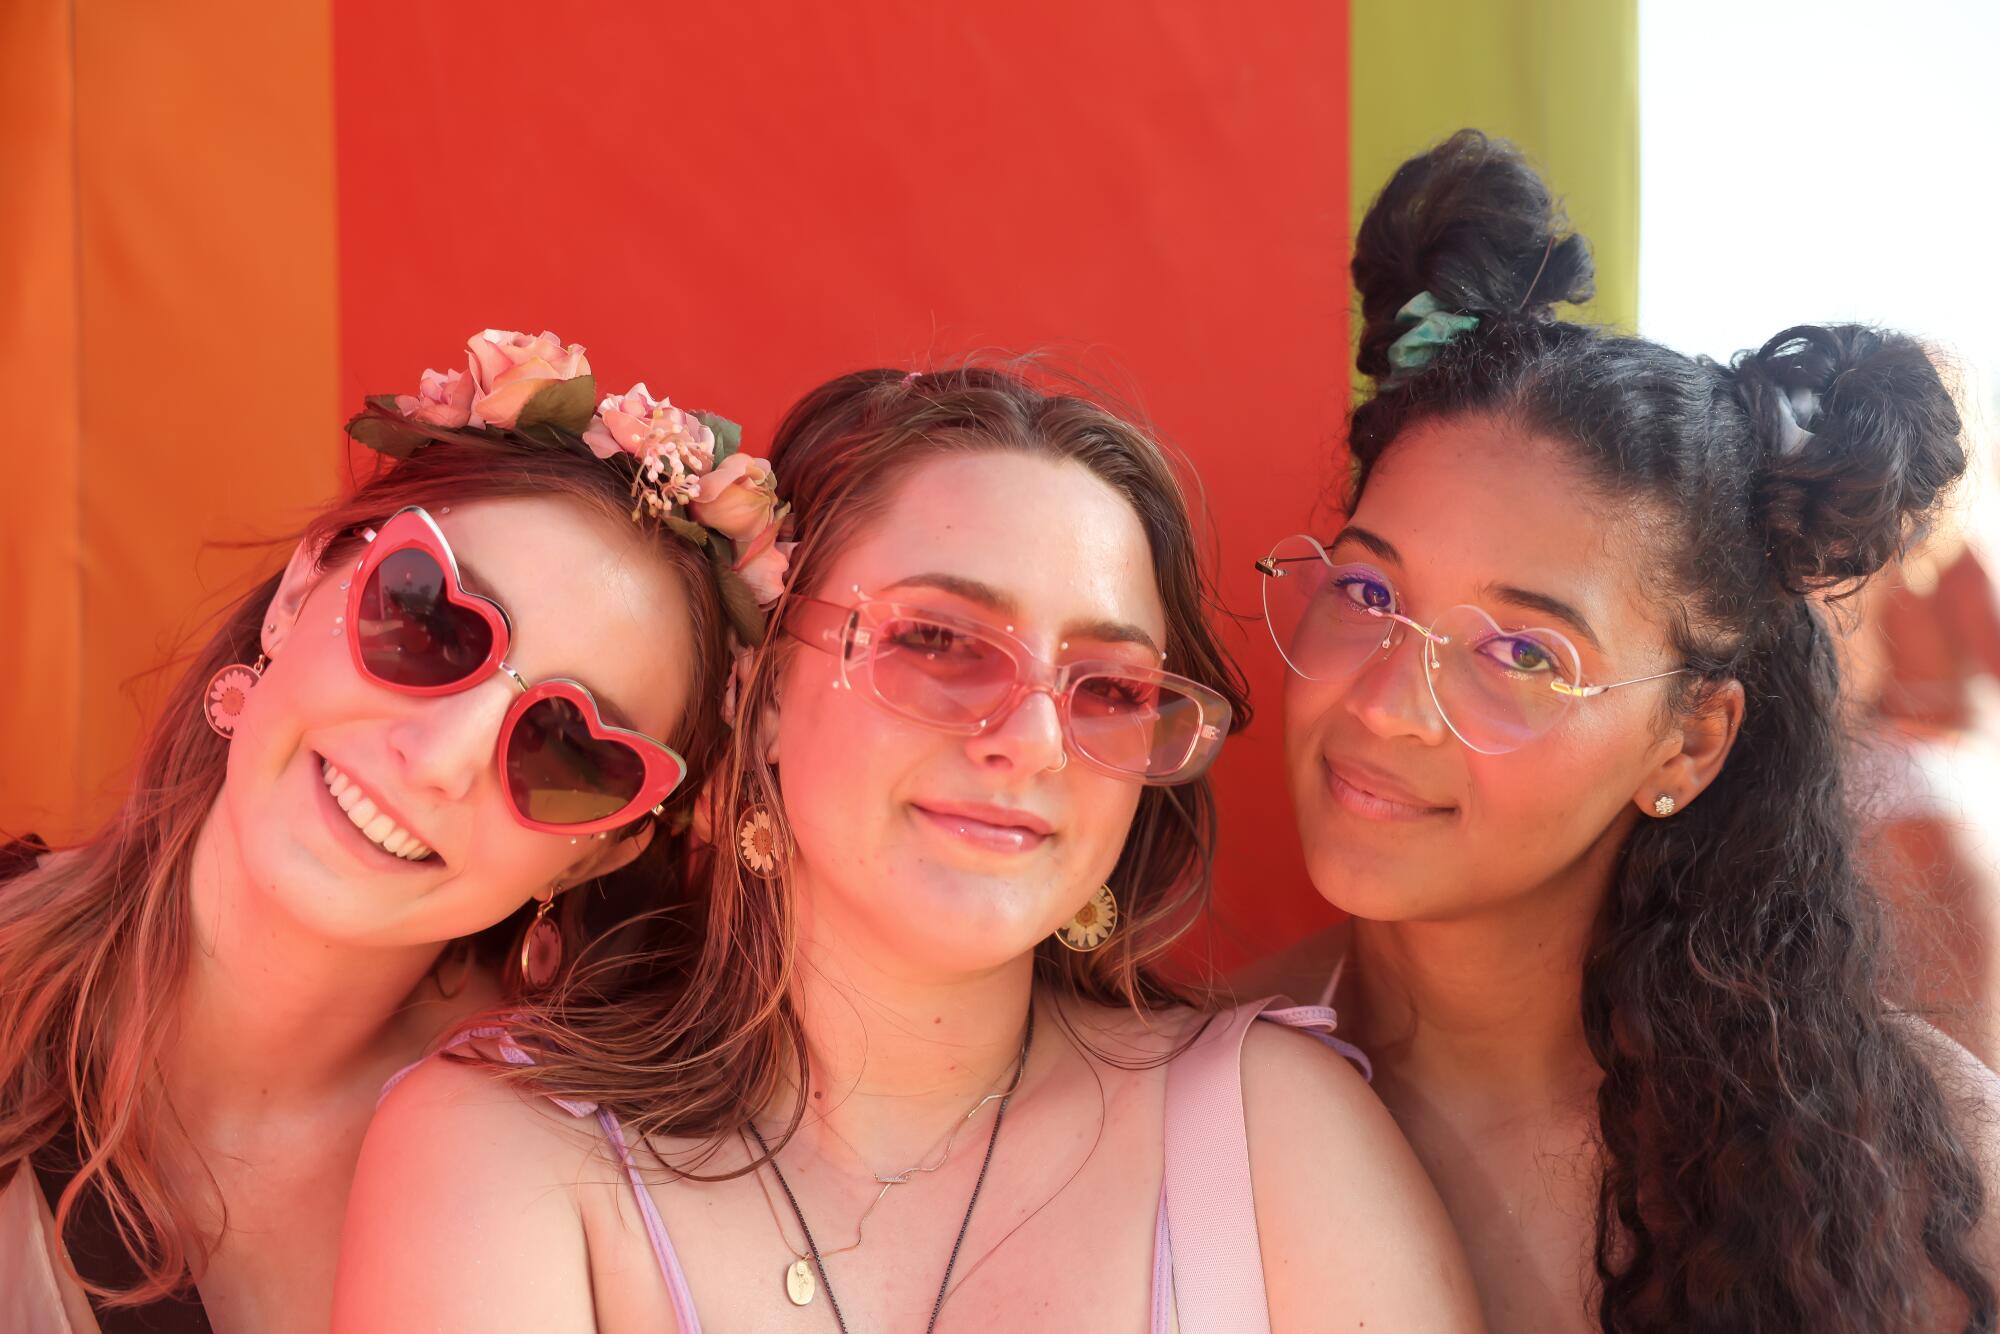     San Diego's Julia Ednick, Bree Corallo, and Zaina Green describe their look as "Basic fairy."